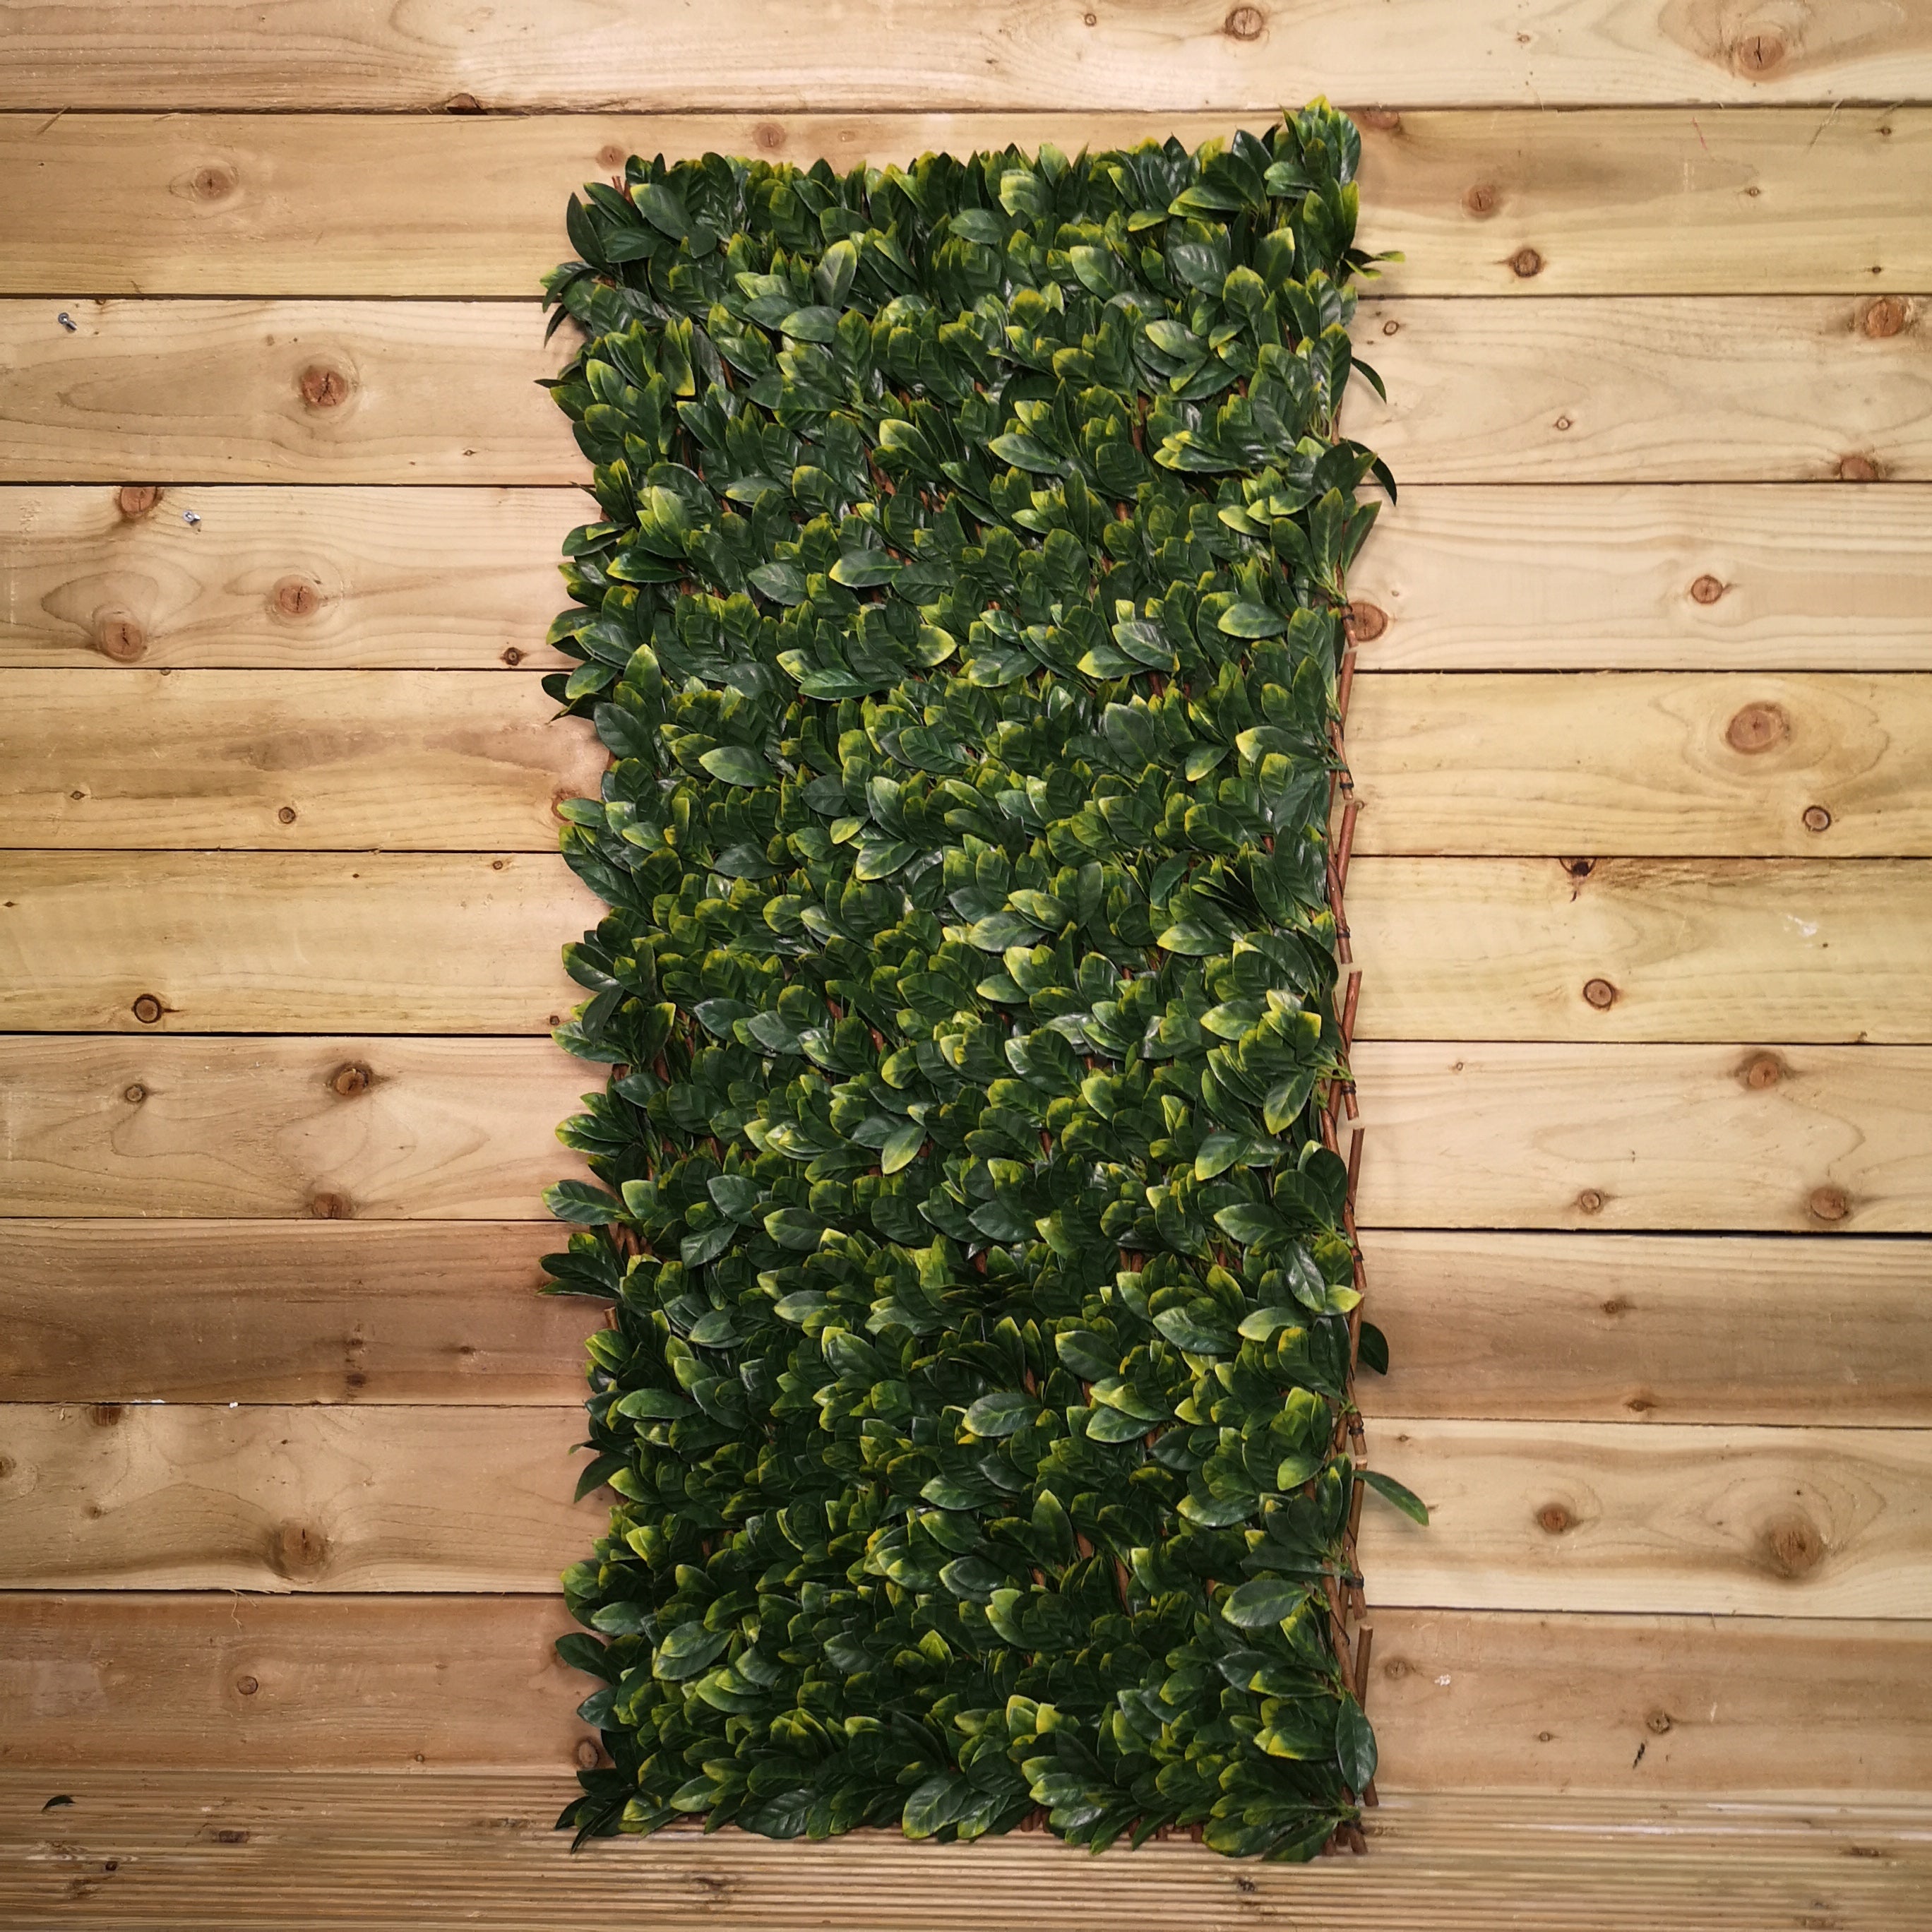 100cm x 200cm Artificial Fence Garden Trellis Privacy Screening Indoor Outdoor Wall Panel - Laurel Leaf